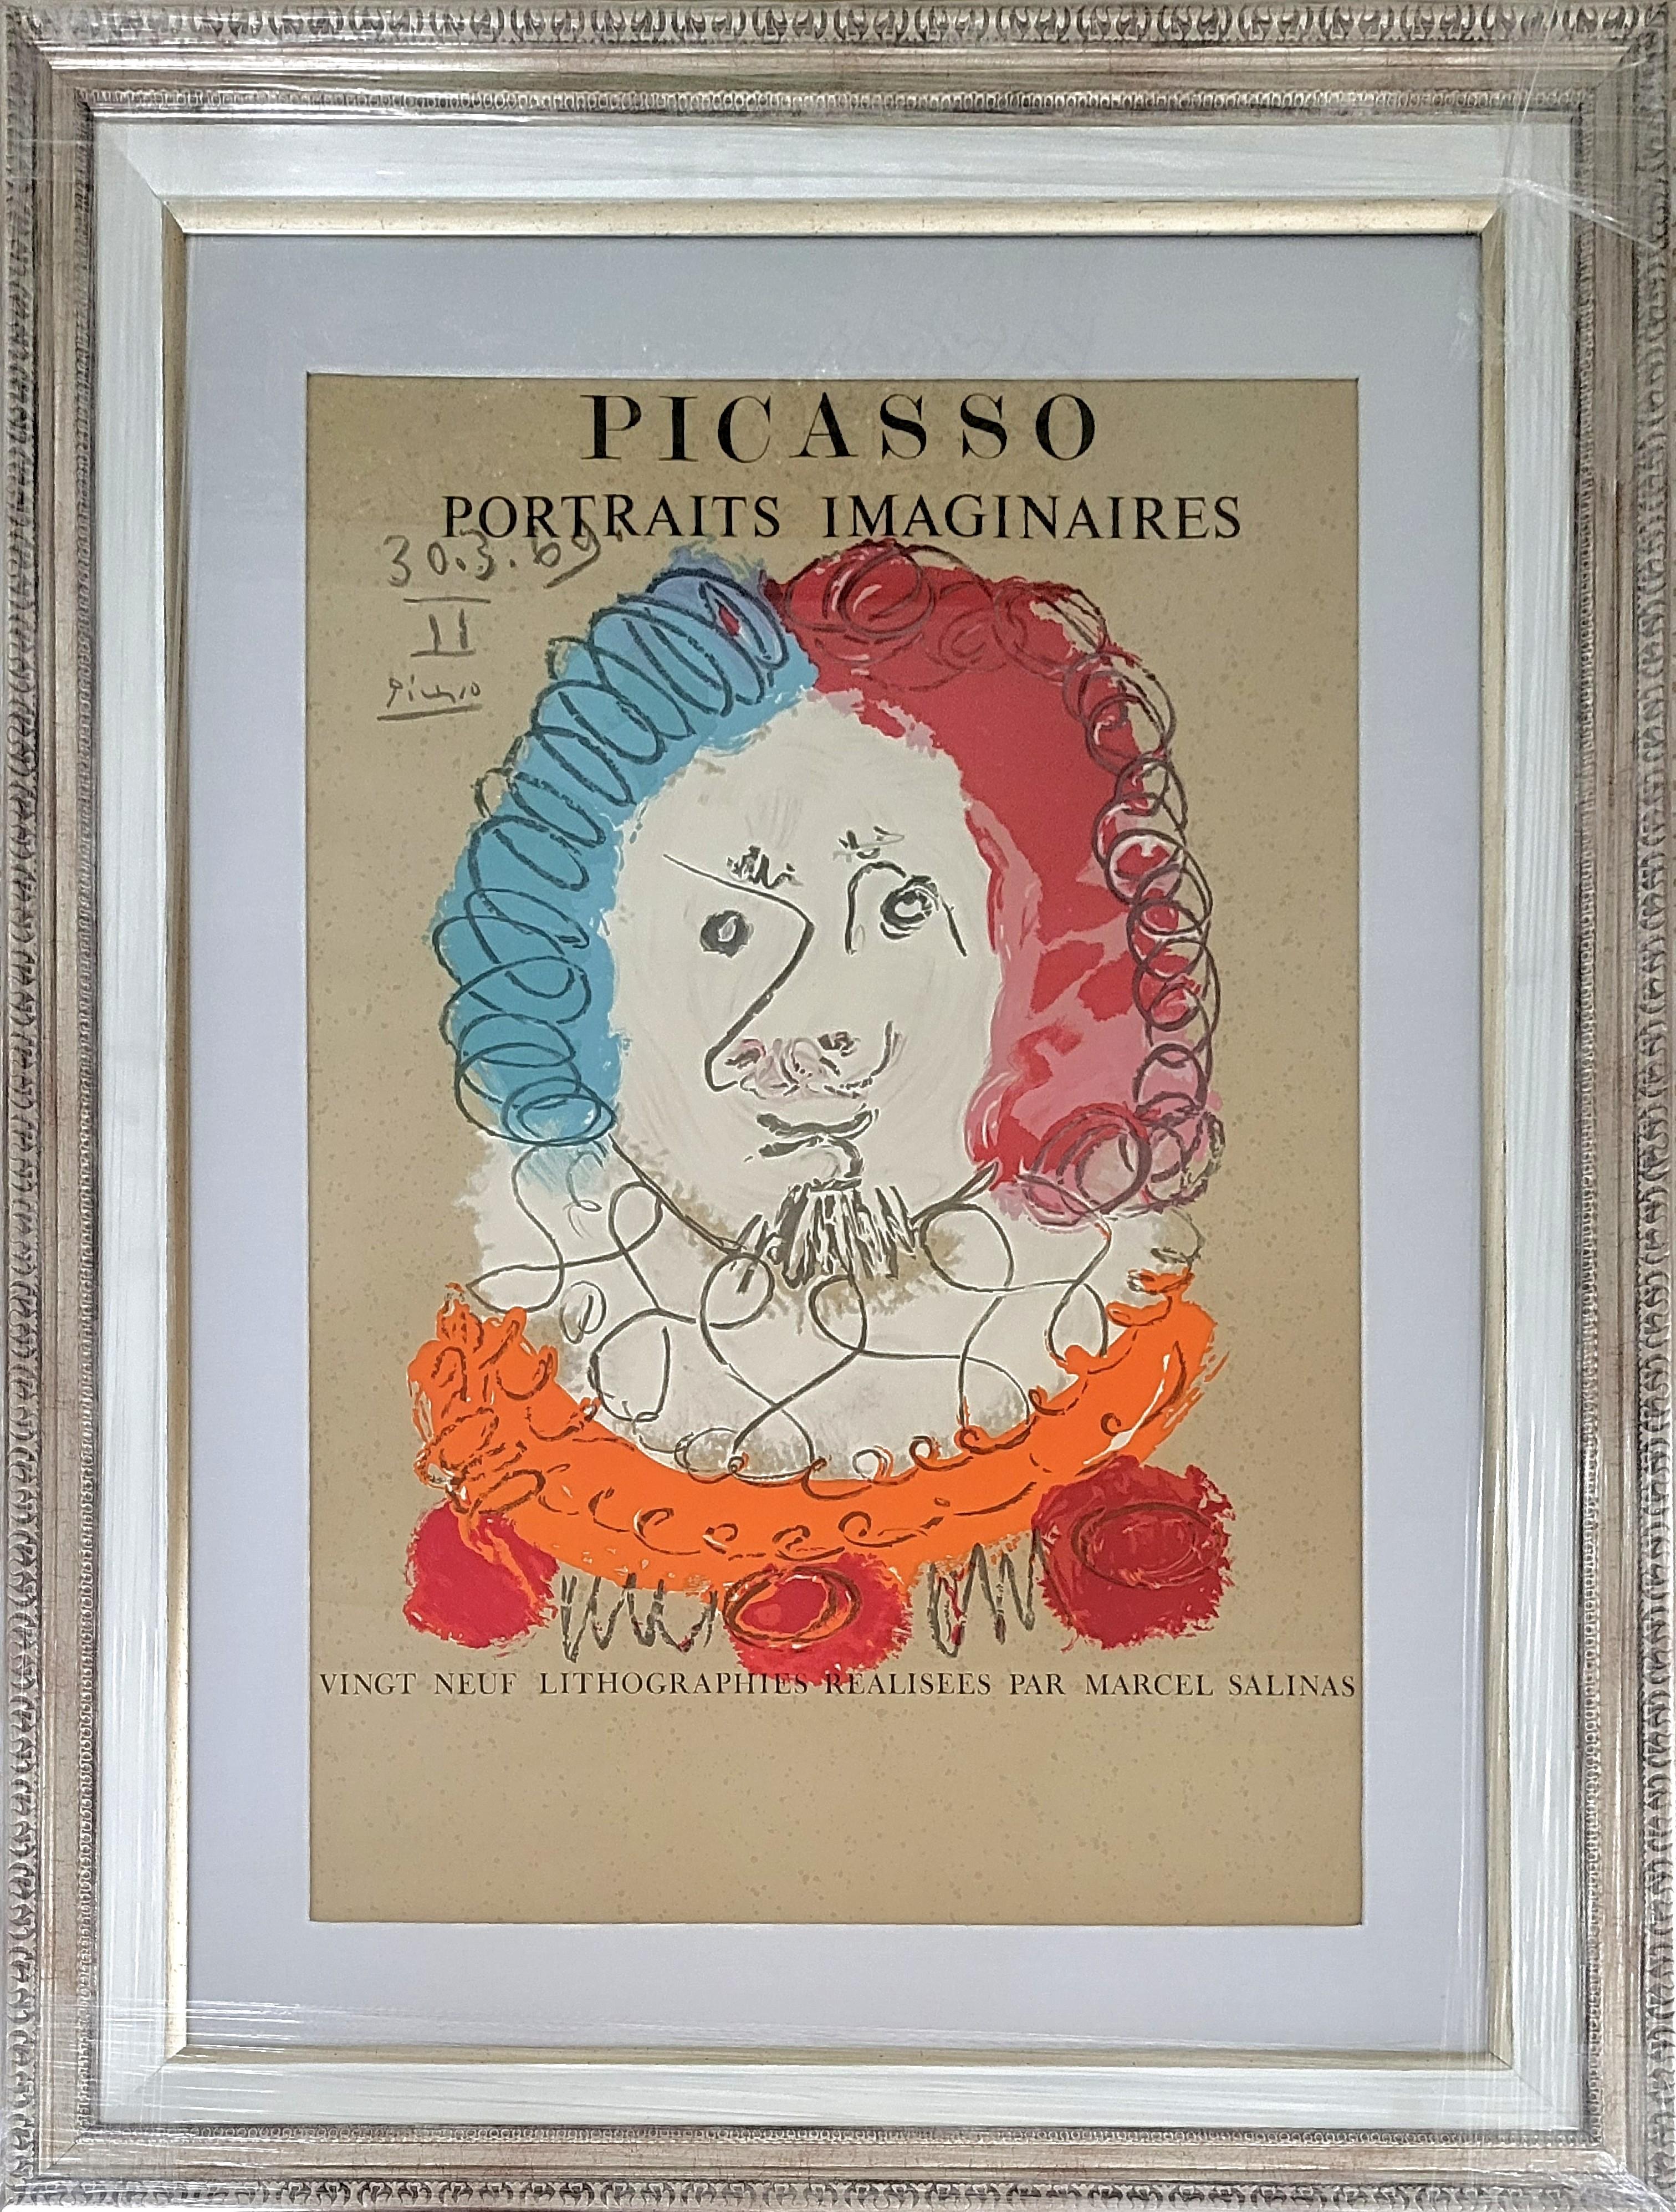 Figurative Print Pablo Picasso - Portraits imaginaires, 1969